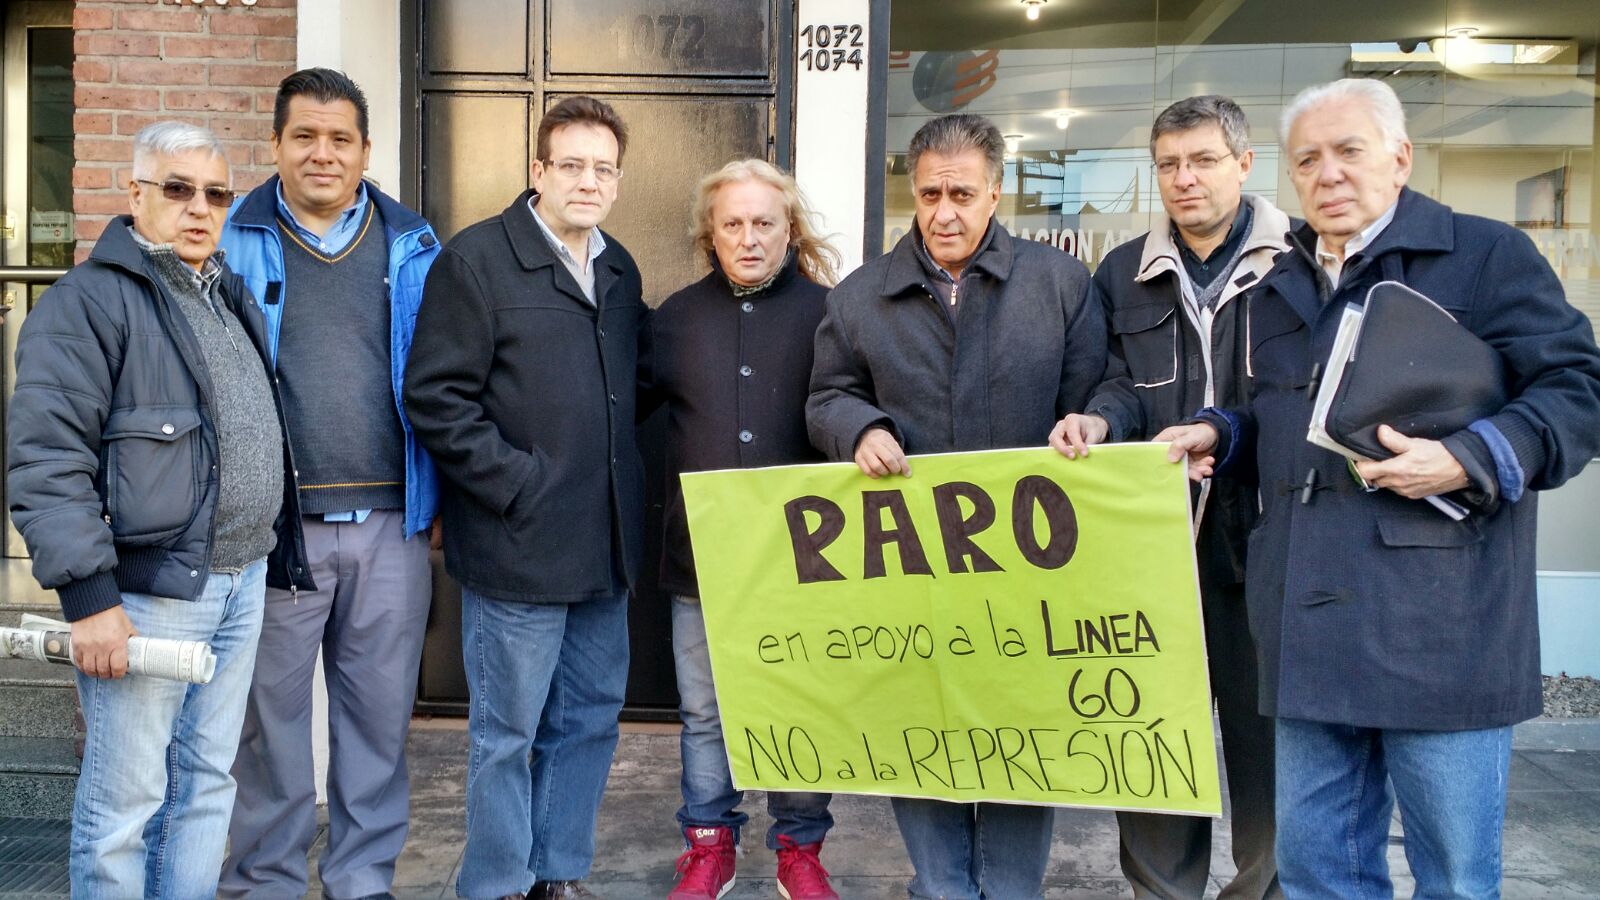 Altamira-Giordano se reunieron con los gremios del transporte y reclamaron un paro en apoyo a la línea 60